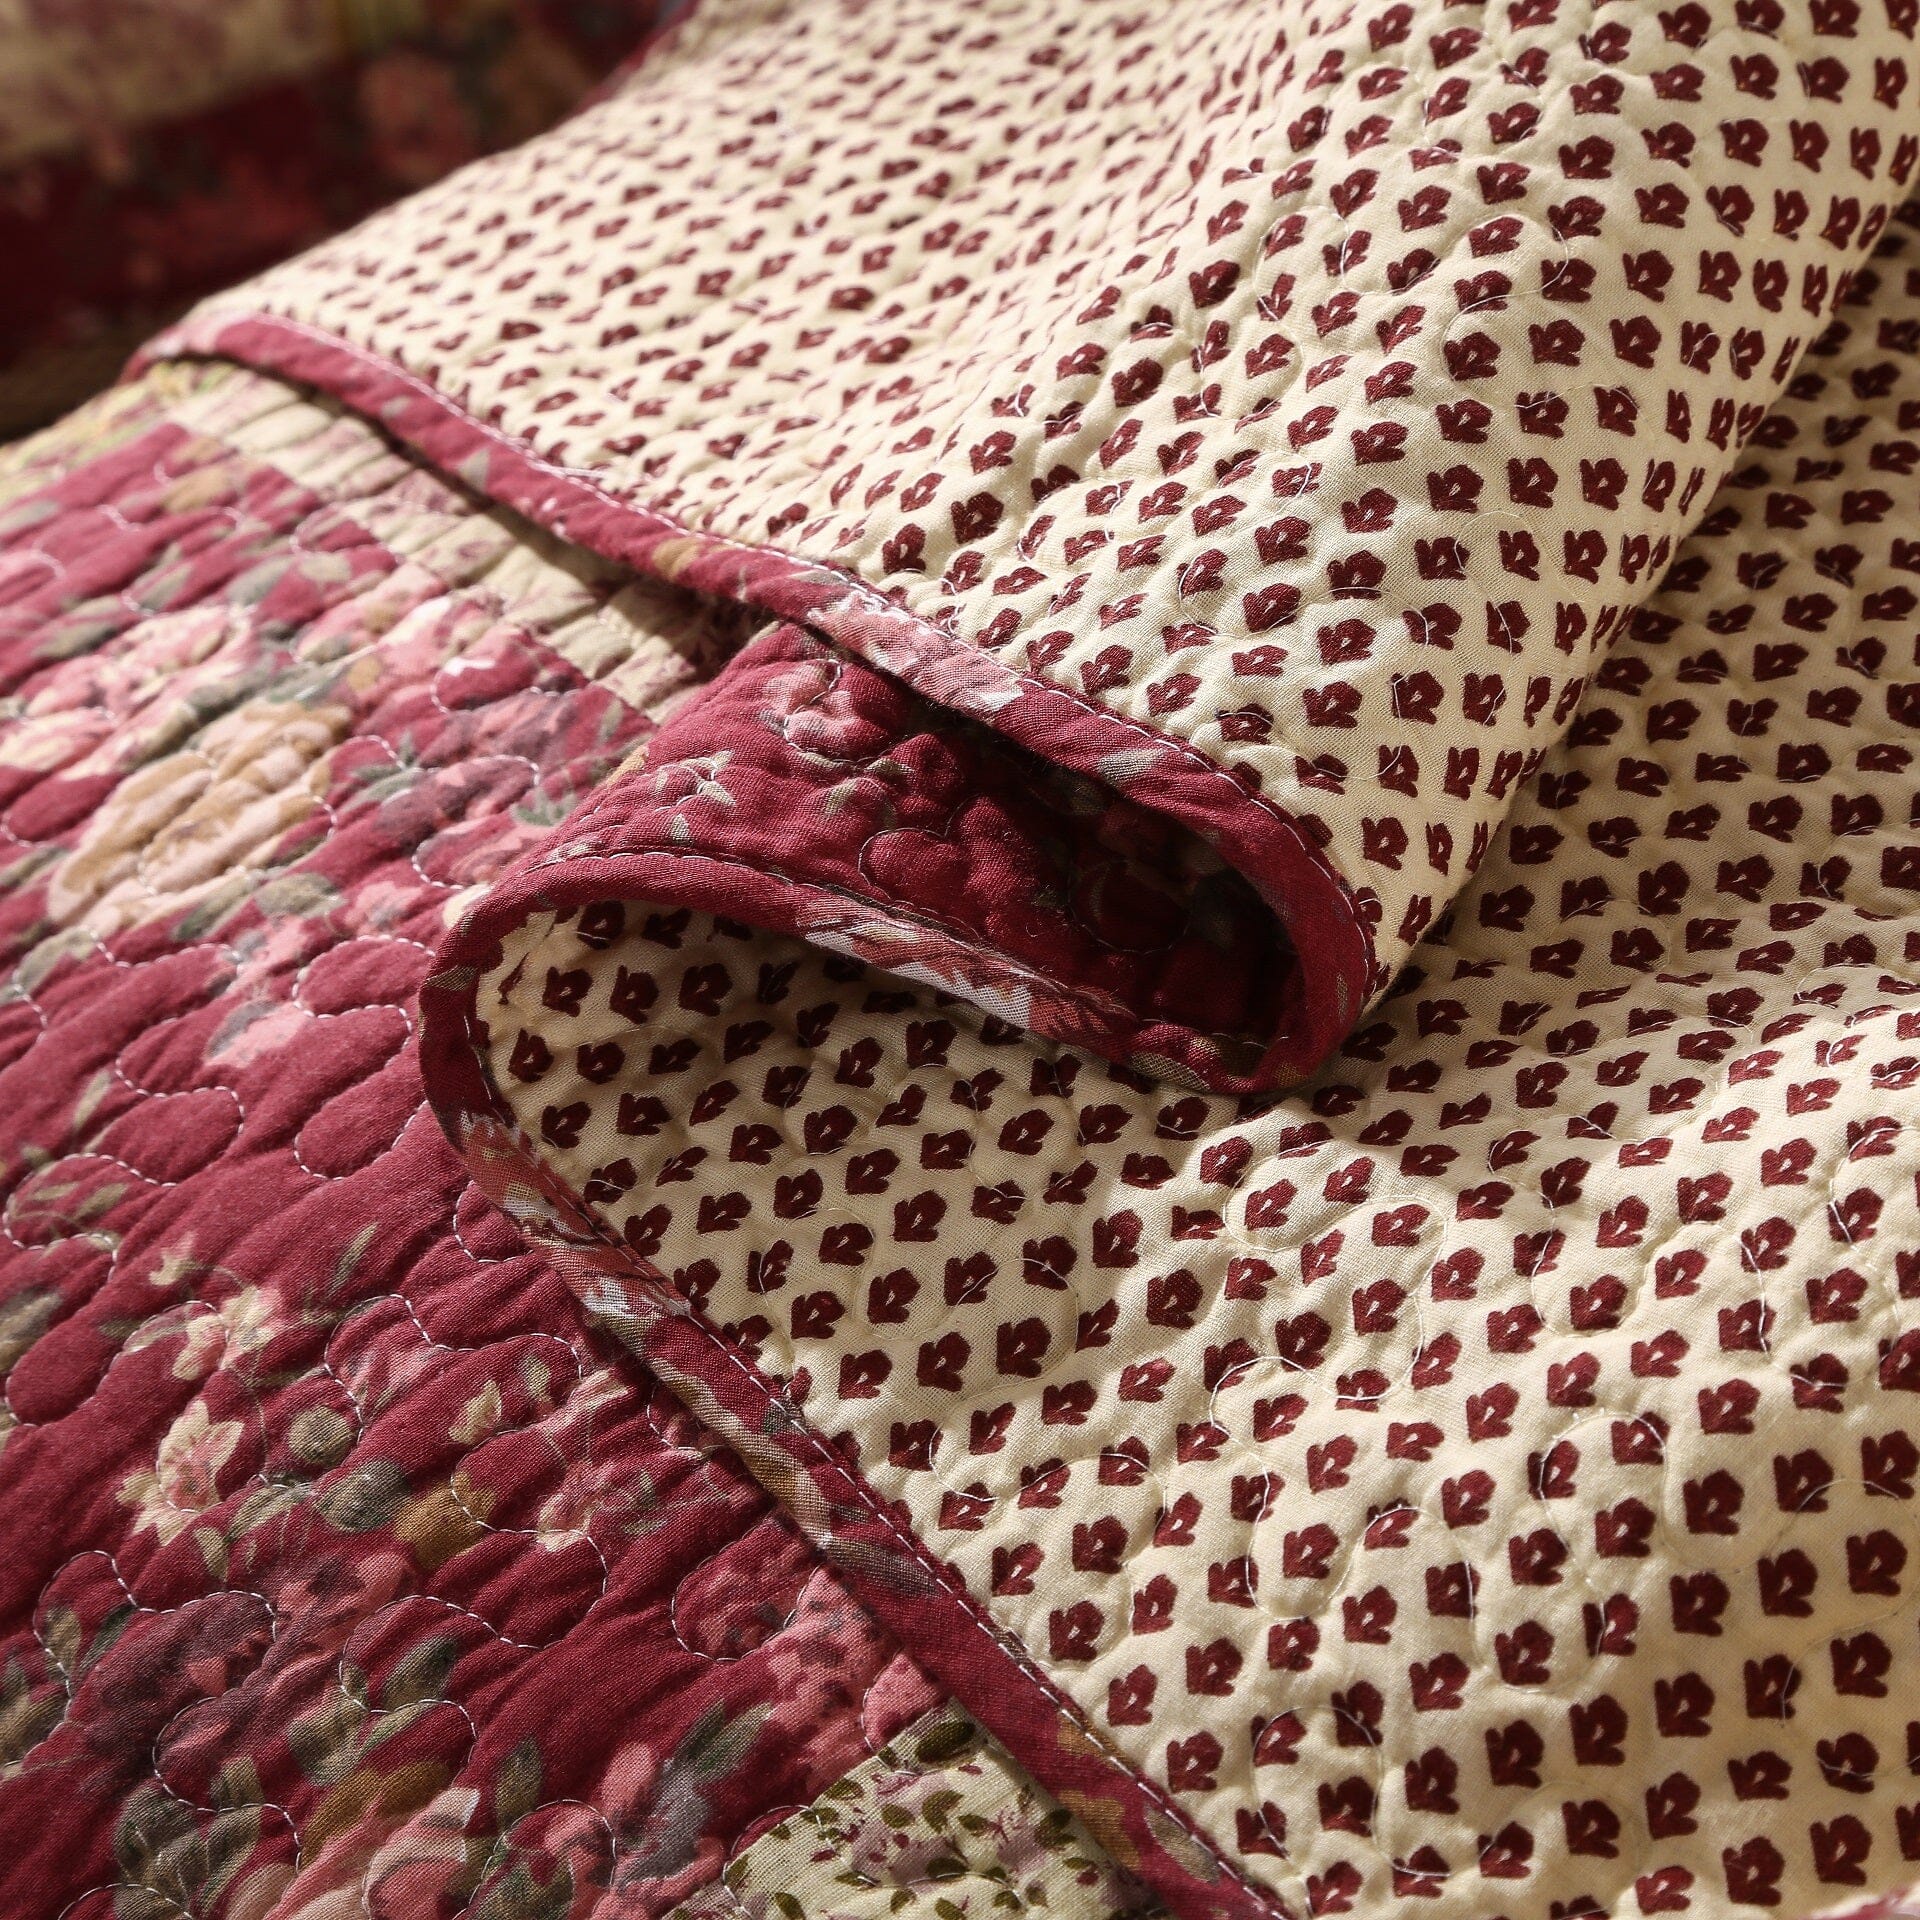 Tache Fairy Tale Tea Party Beige Burgundy Paisley Floral Cotton Patchwork Quilt Set (DXJ103443) - Tache Home Fashion